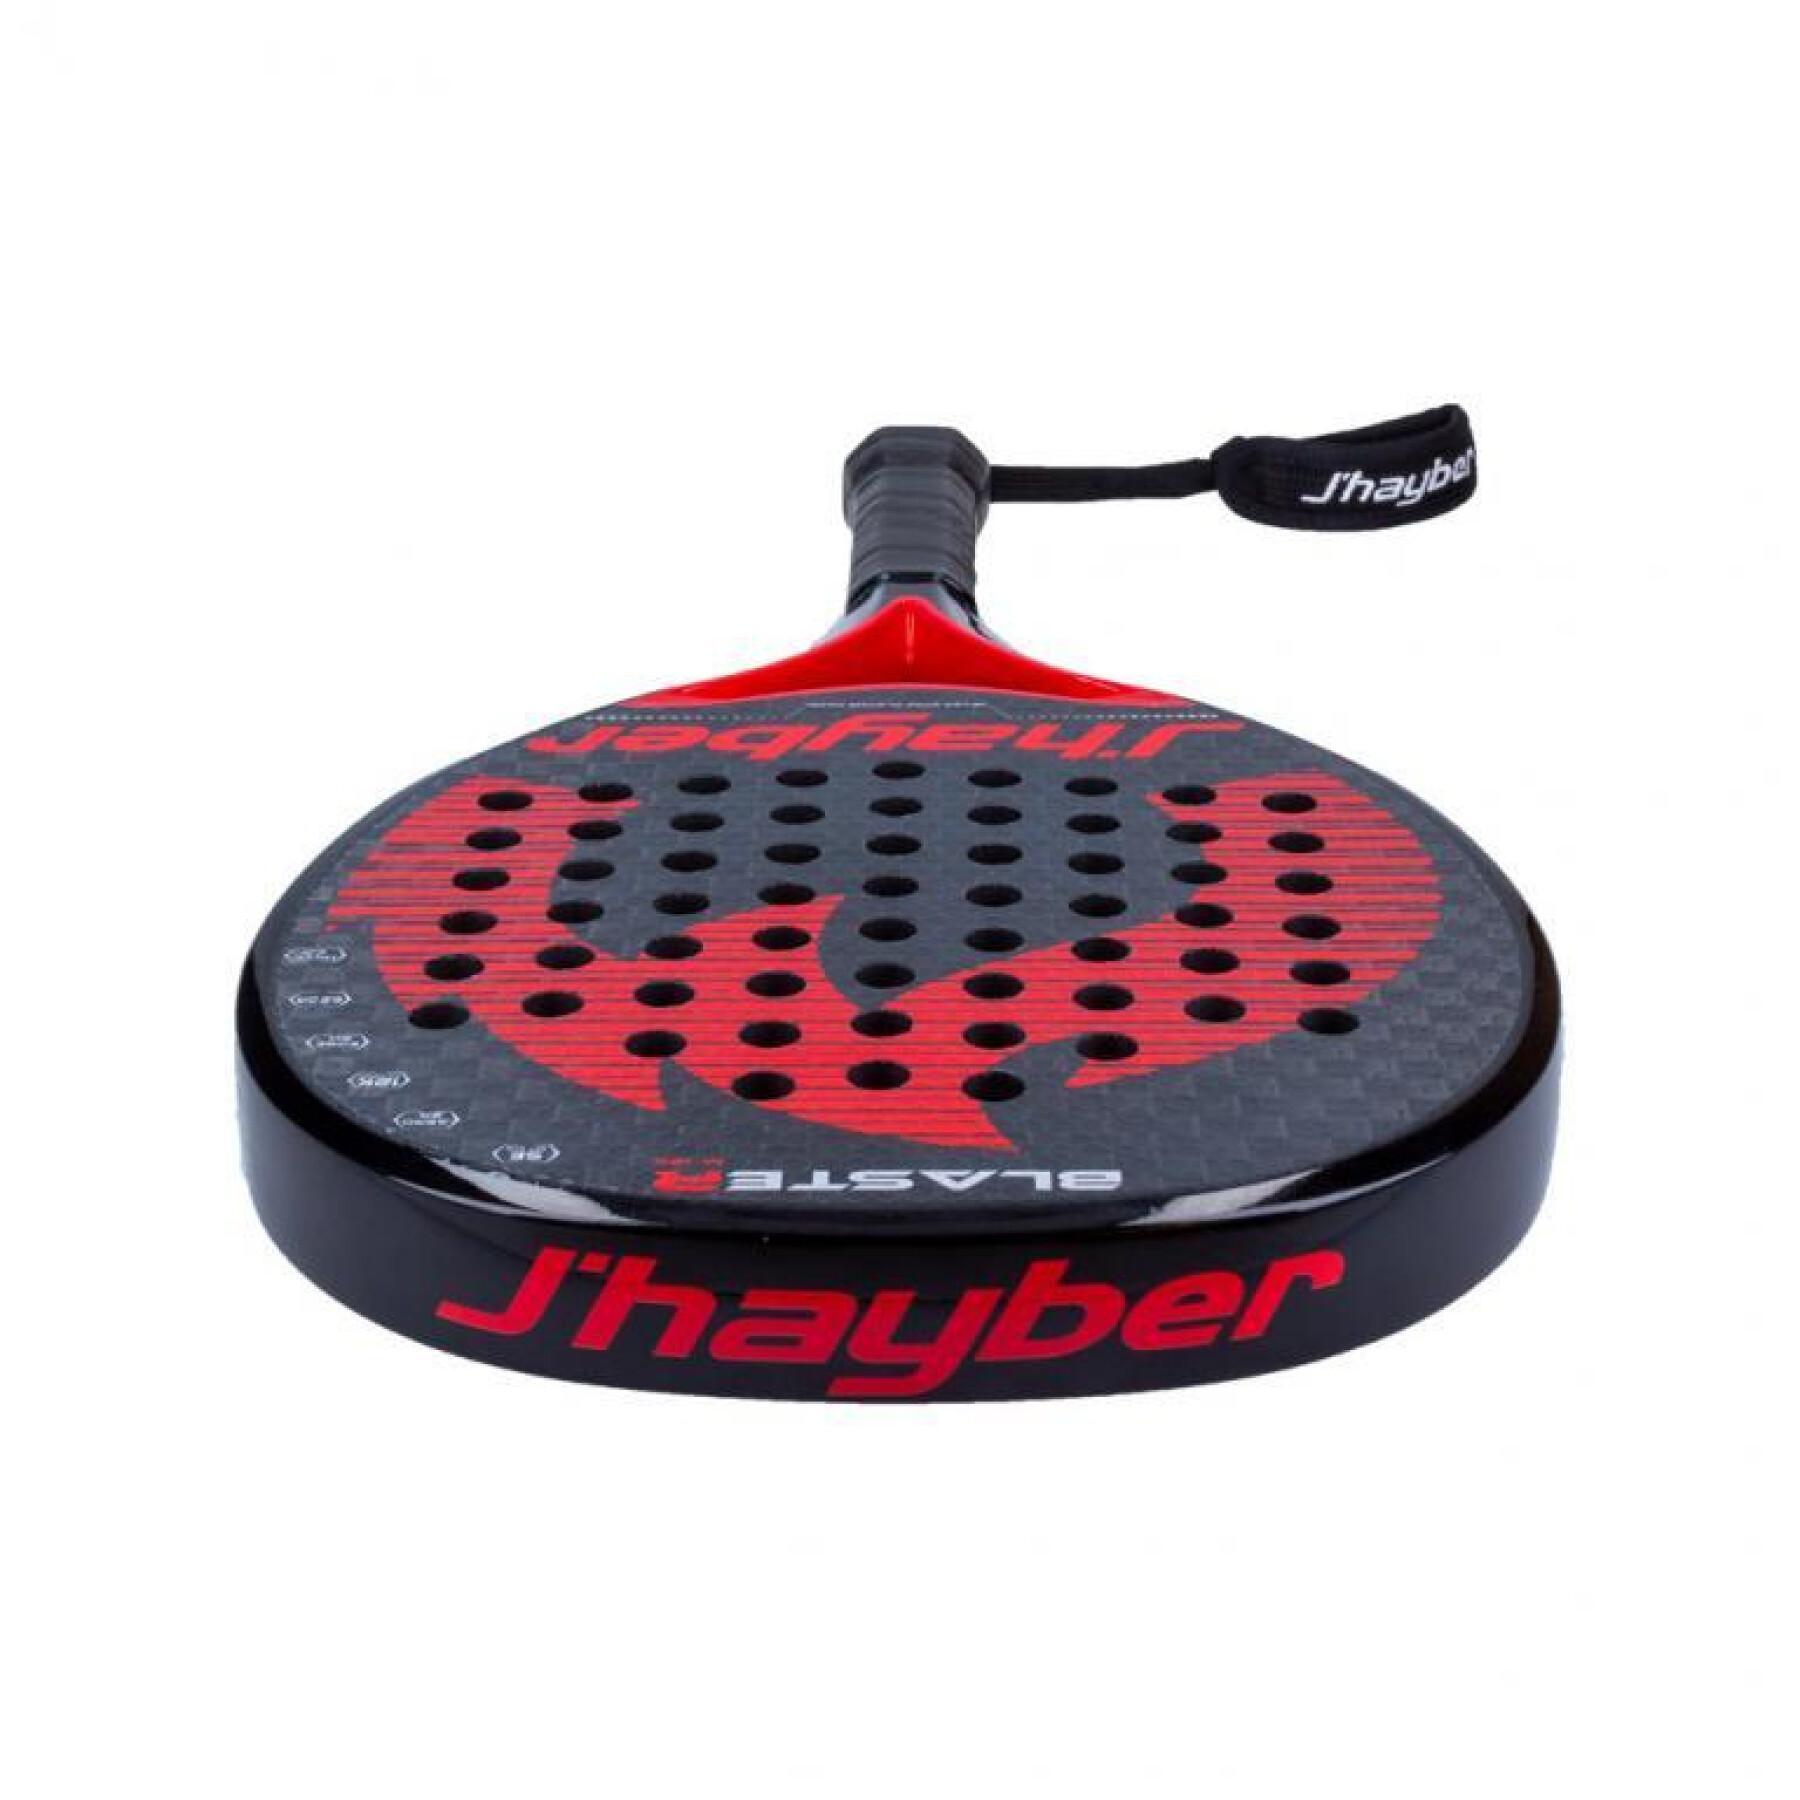 Paddle tennis racket J'hayber Blaster 12K